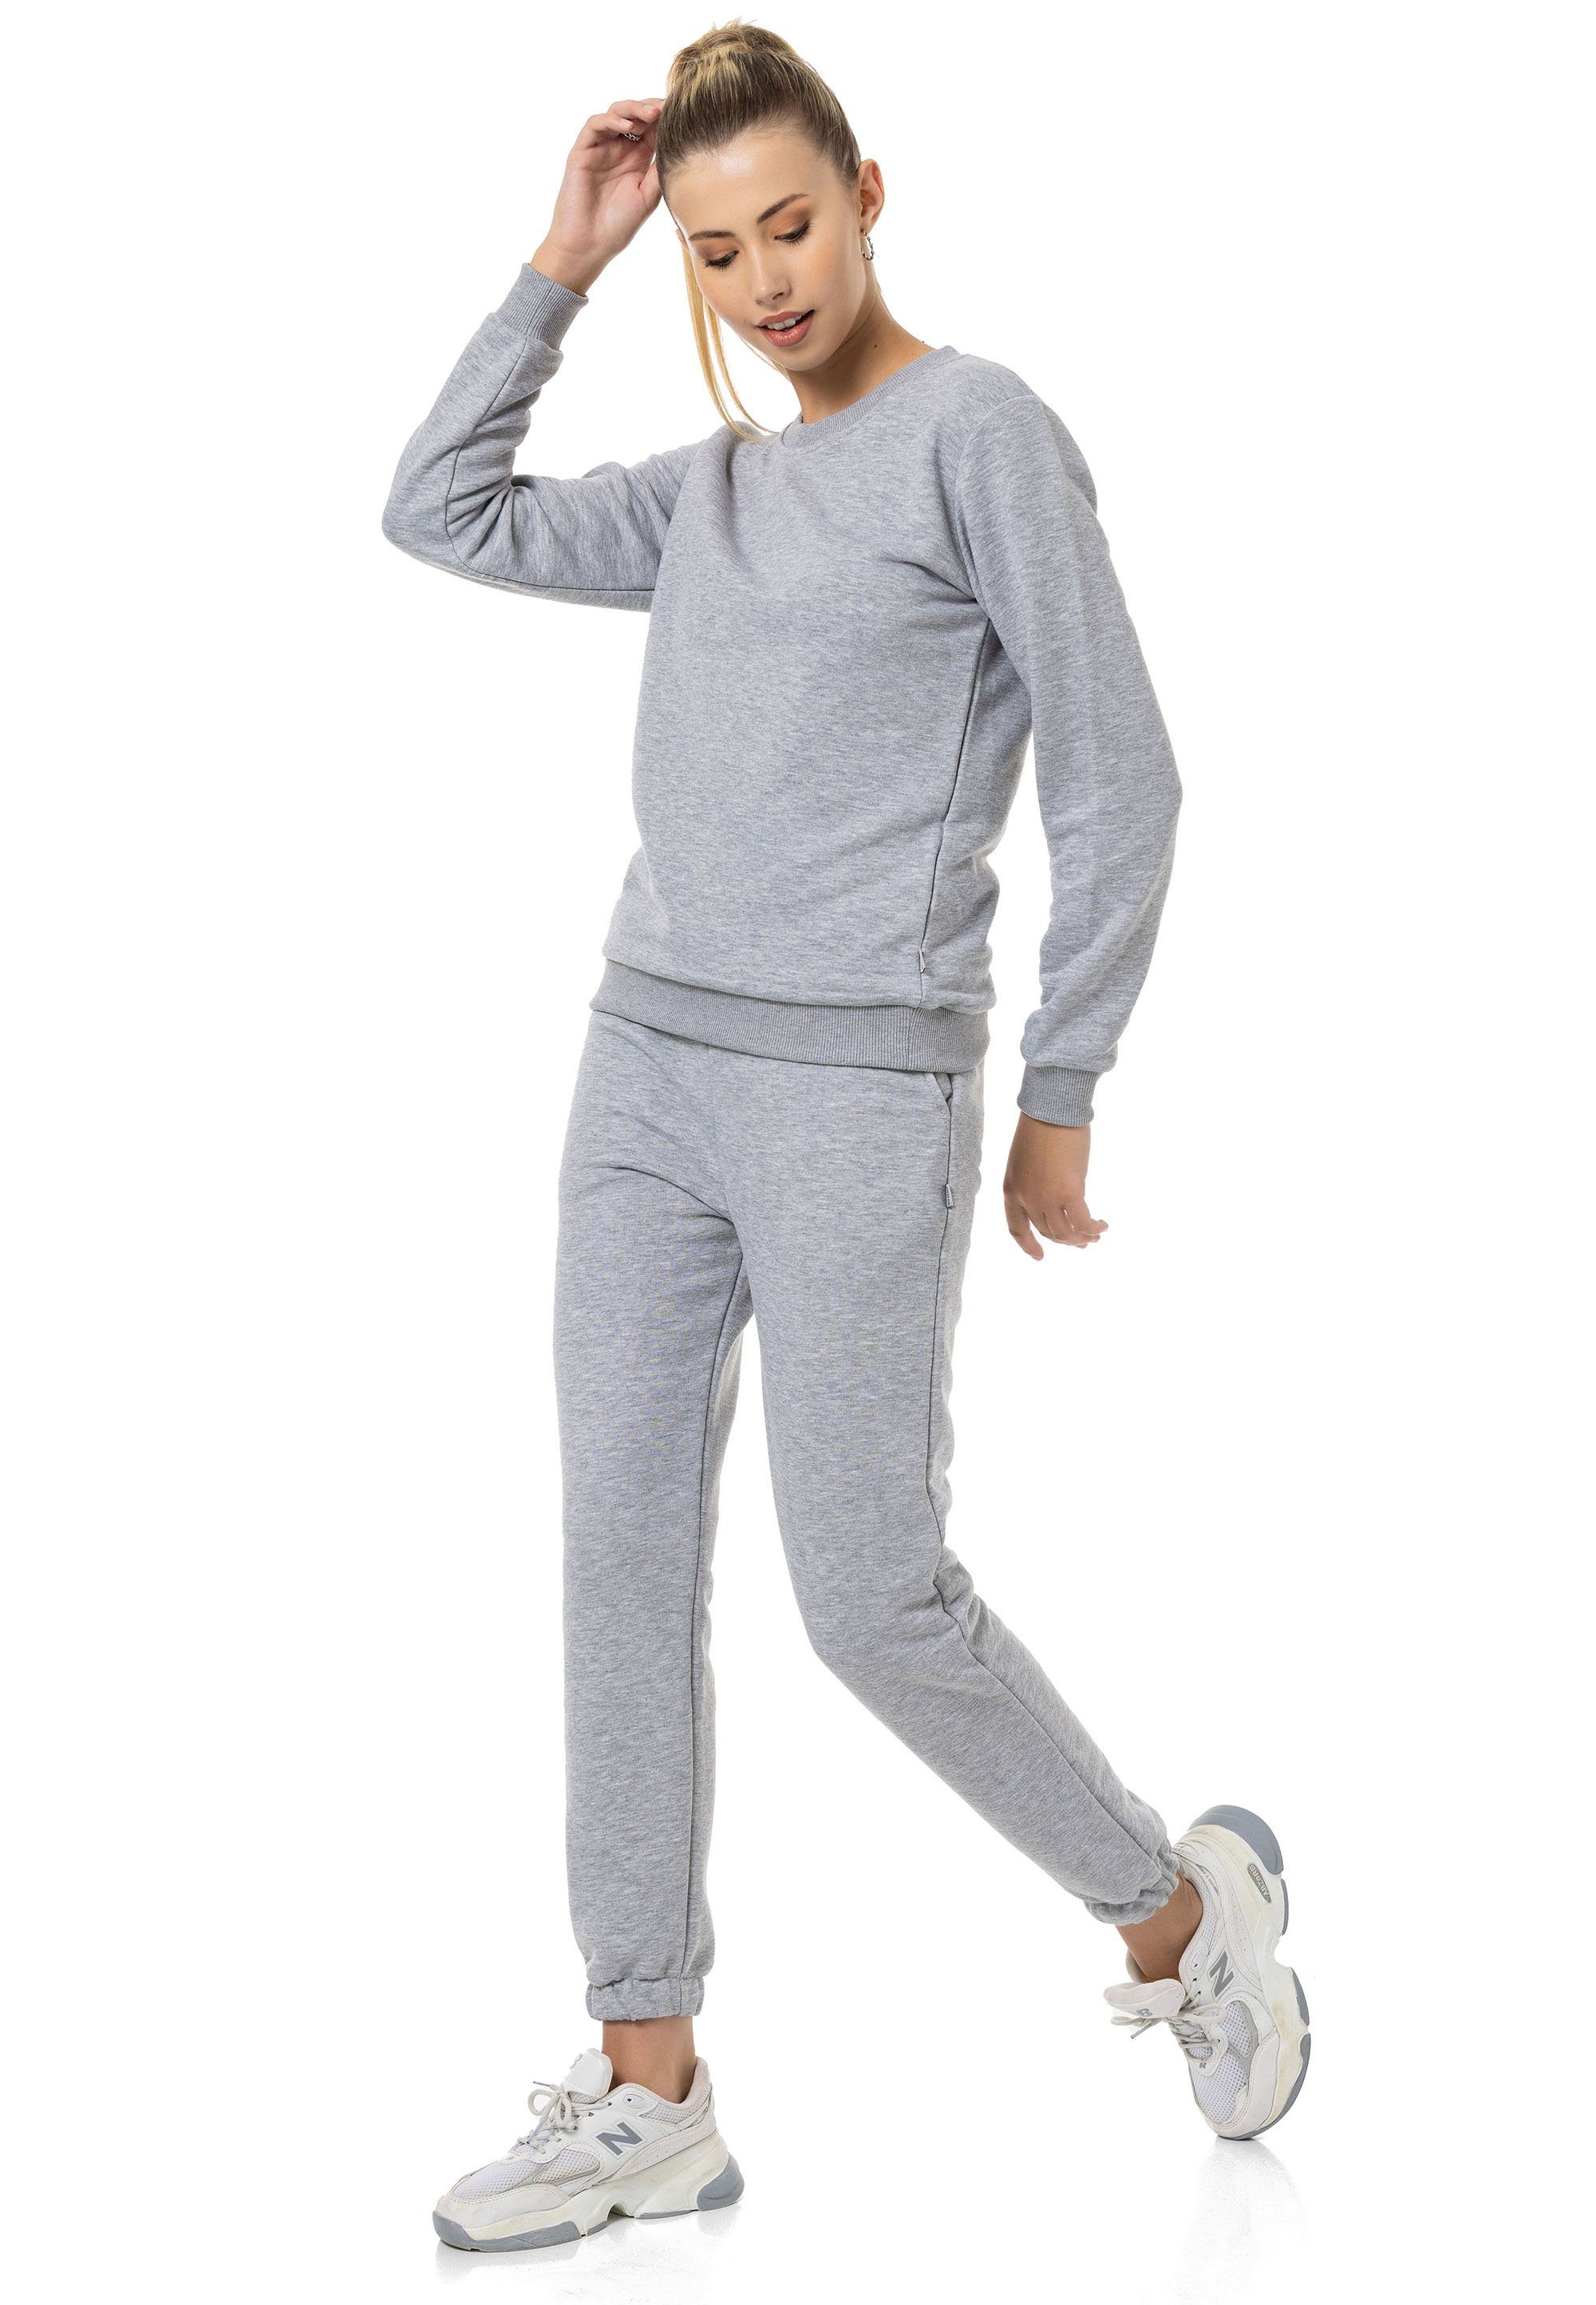 Grau-Melange Qualität Sweatshirt Premium Rundhals Pullover RedBridge